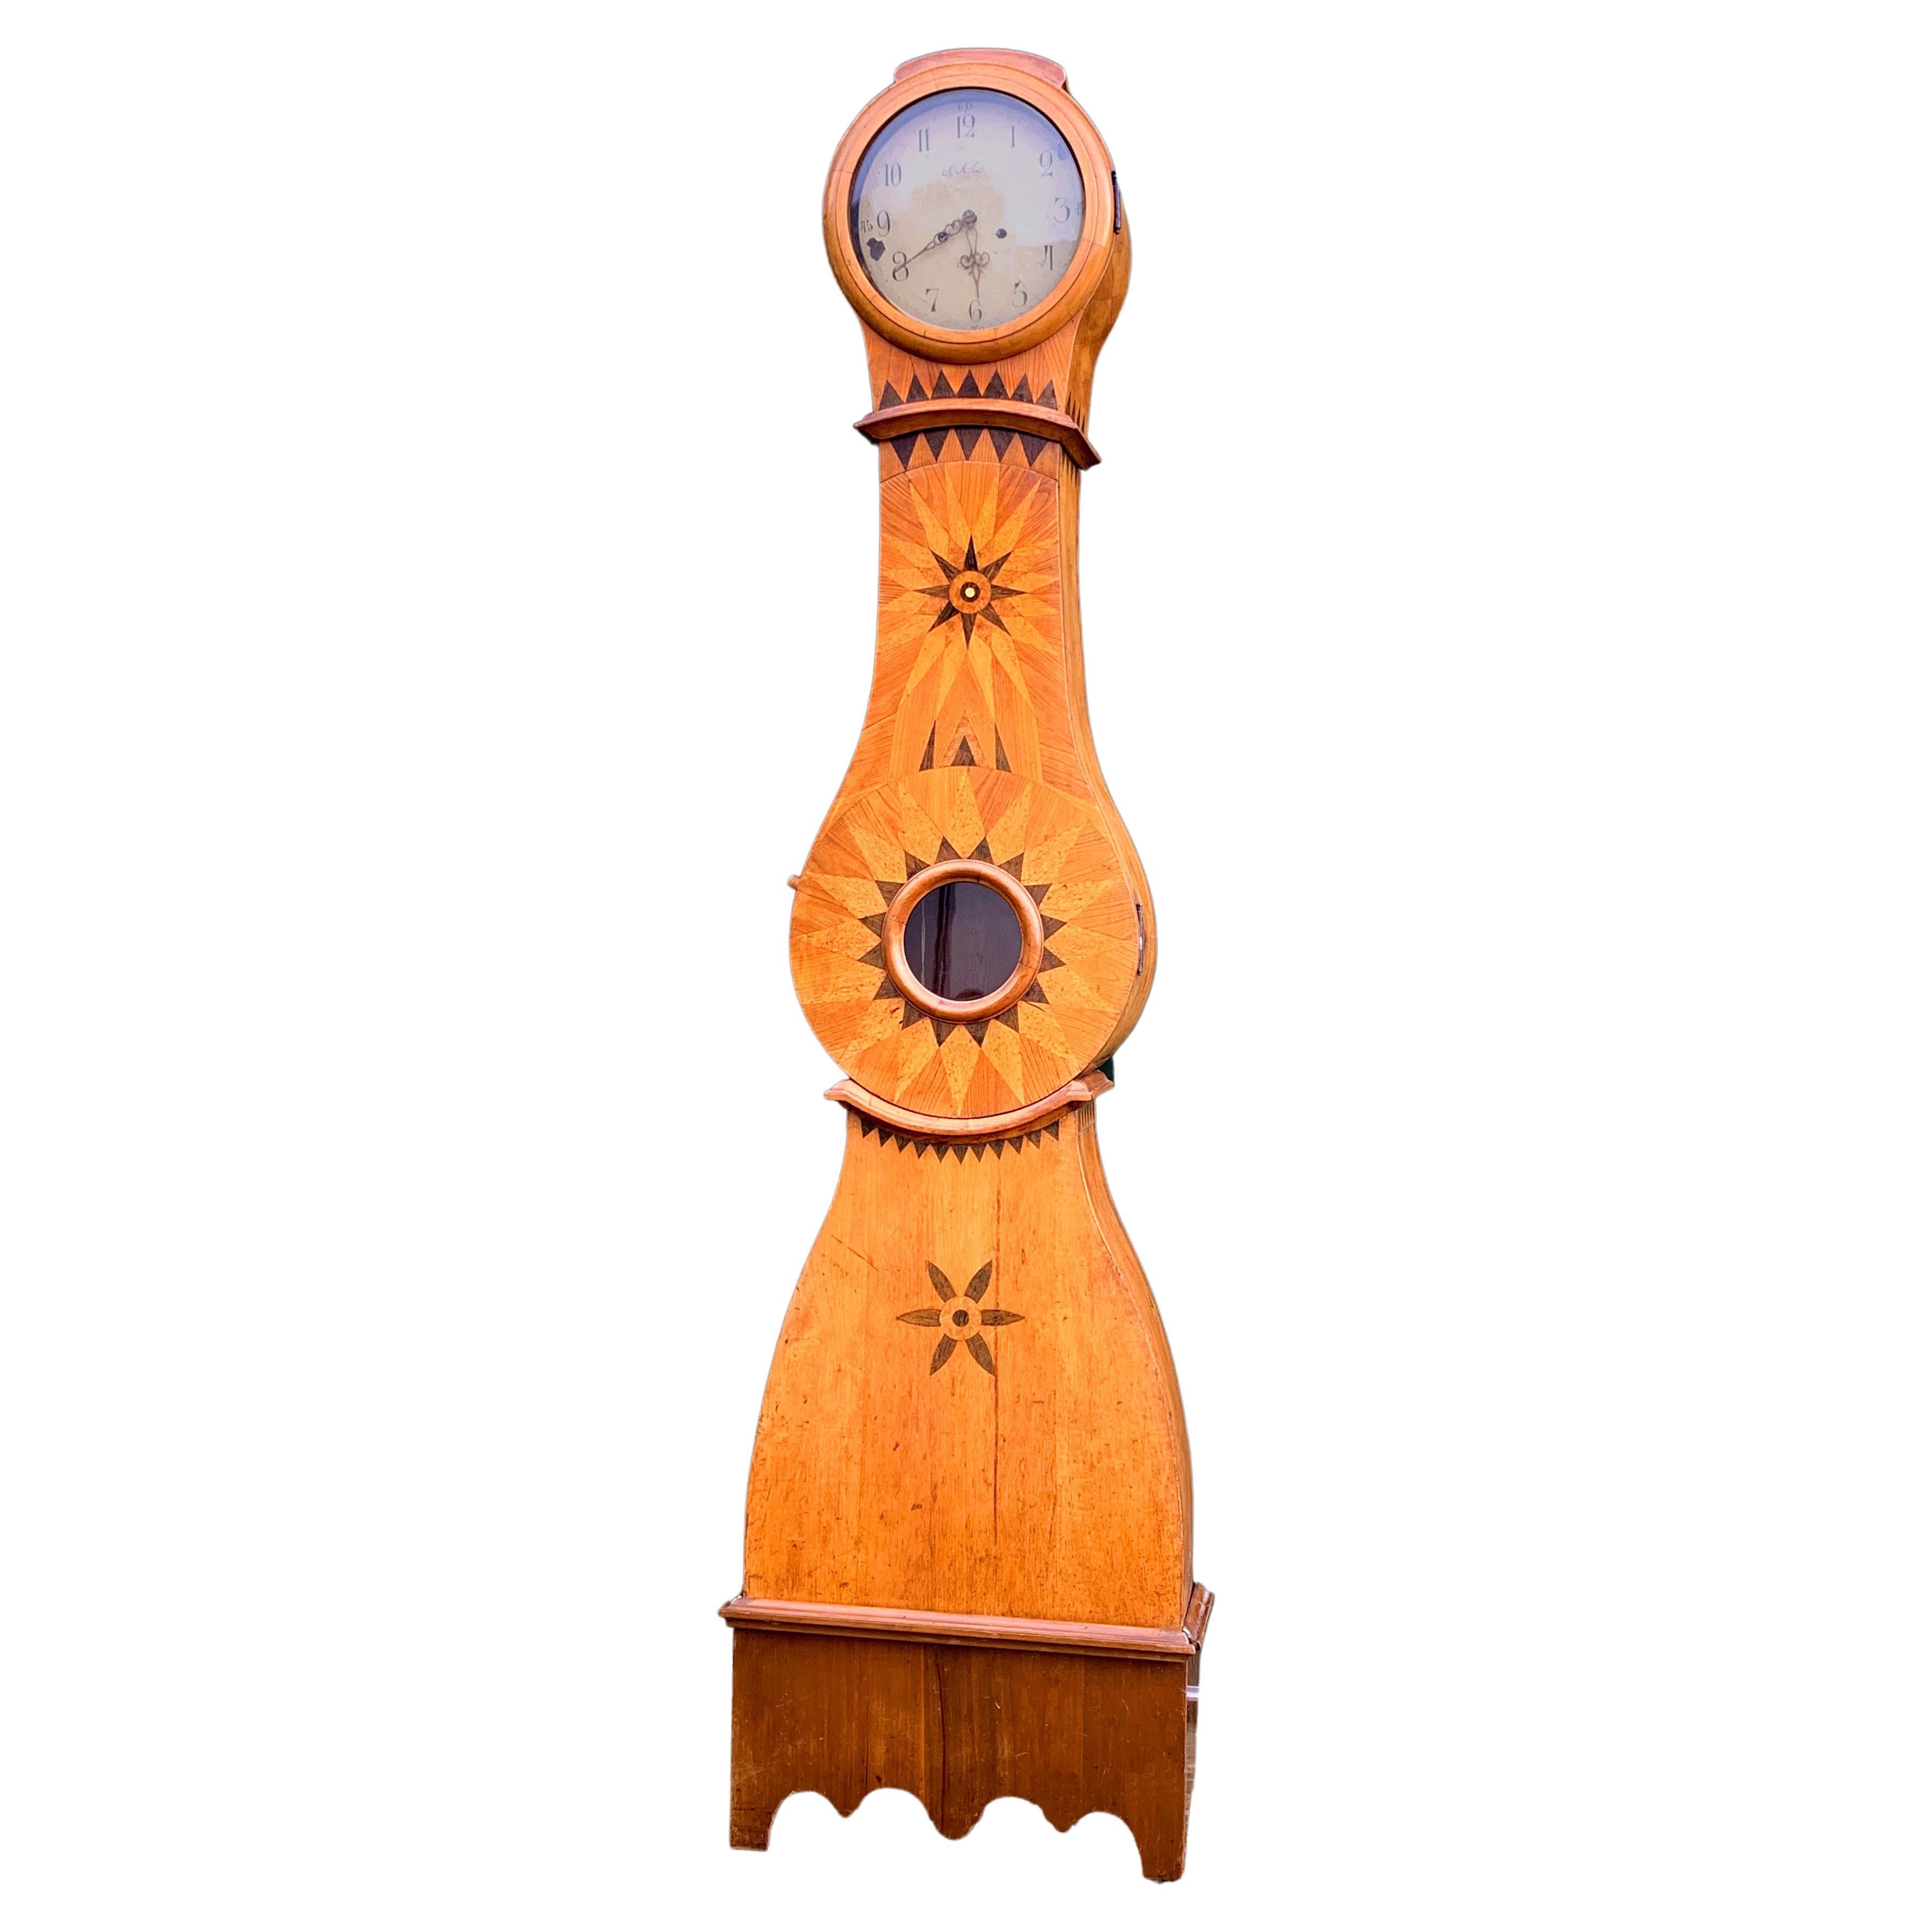 Horloge Mora ancienne suédoise Biedermeier avec marqueterie naturelle incrustée style gustavien des années 1800